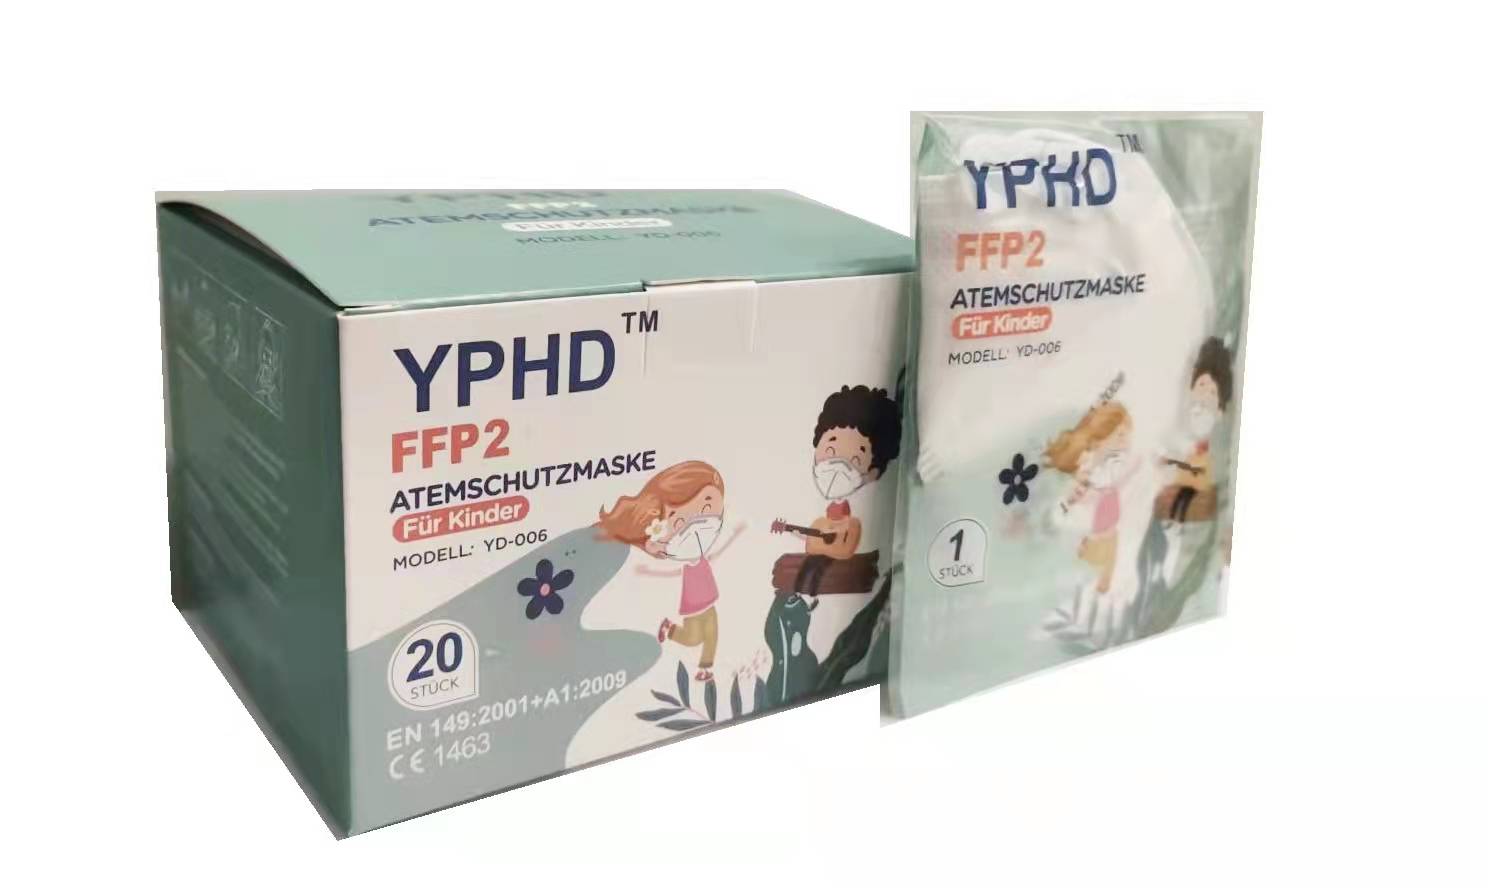 Kinder FFP2 Atemschutzmaske mit CE 1463 1 Box 20 Stück ( Einzelnverpackung)